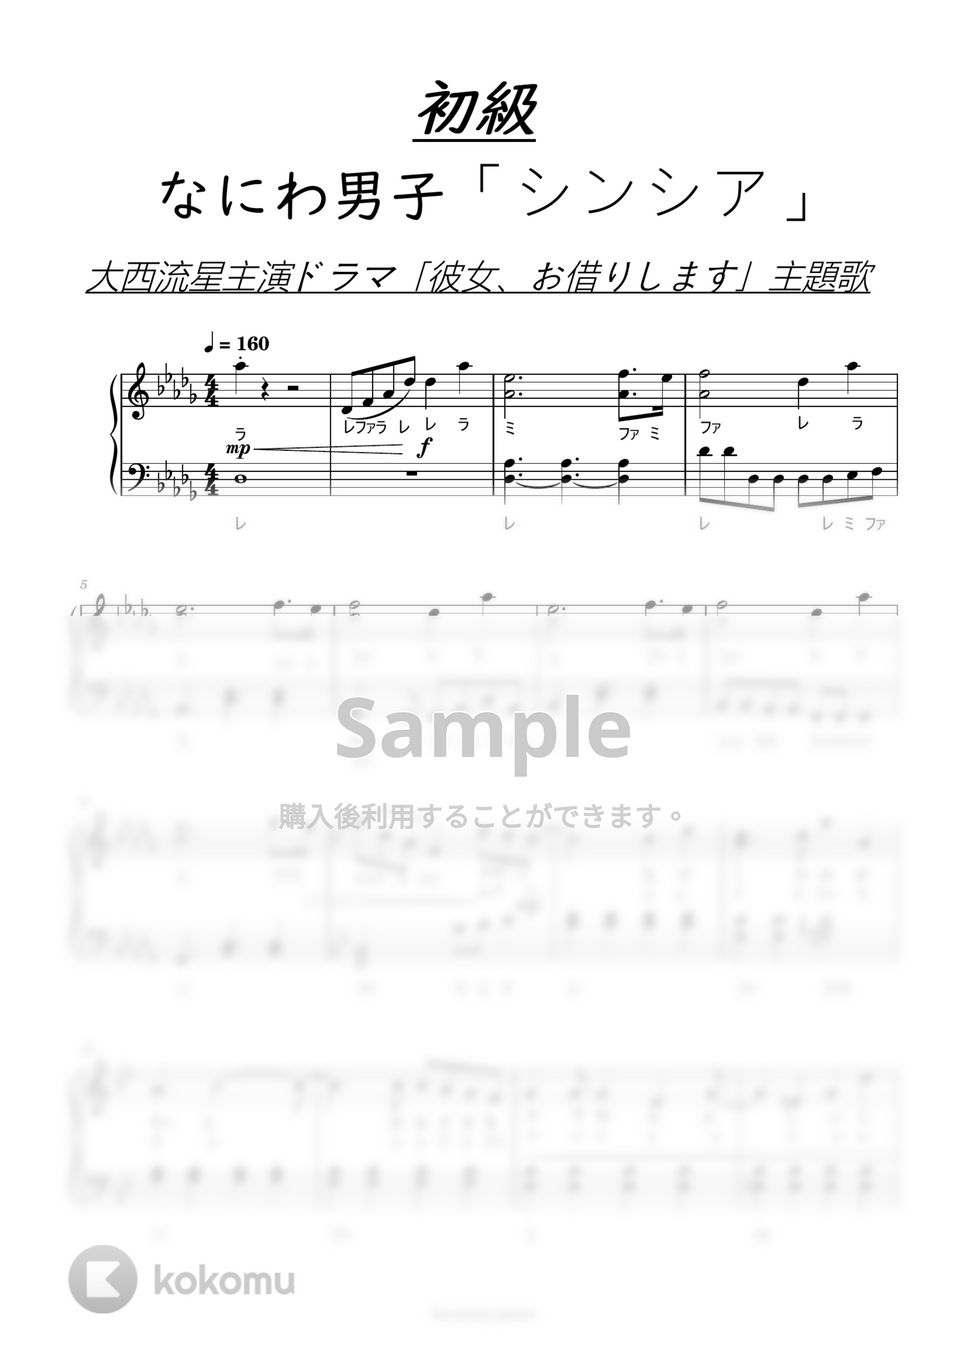 なにわ男子 ドレミ付 - [初級]シンシア by harmony piano